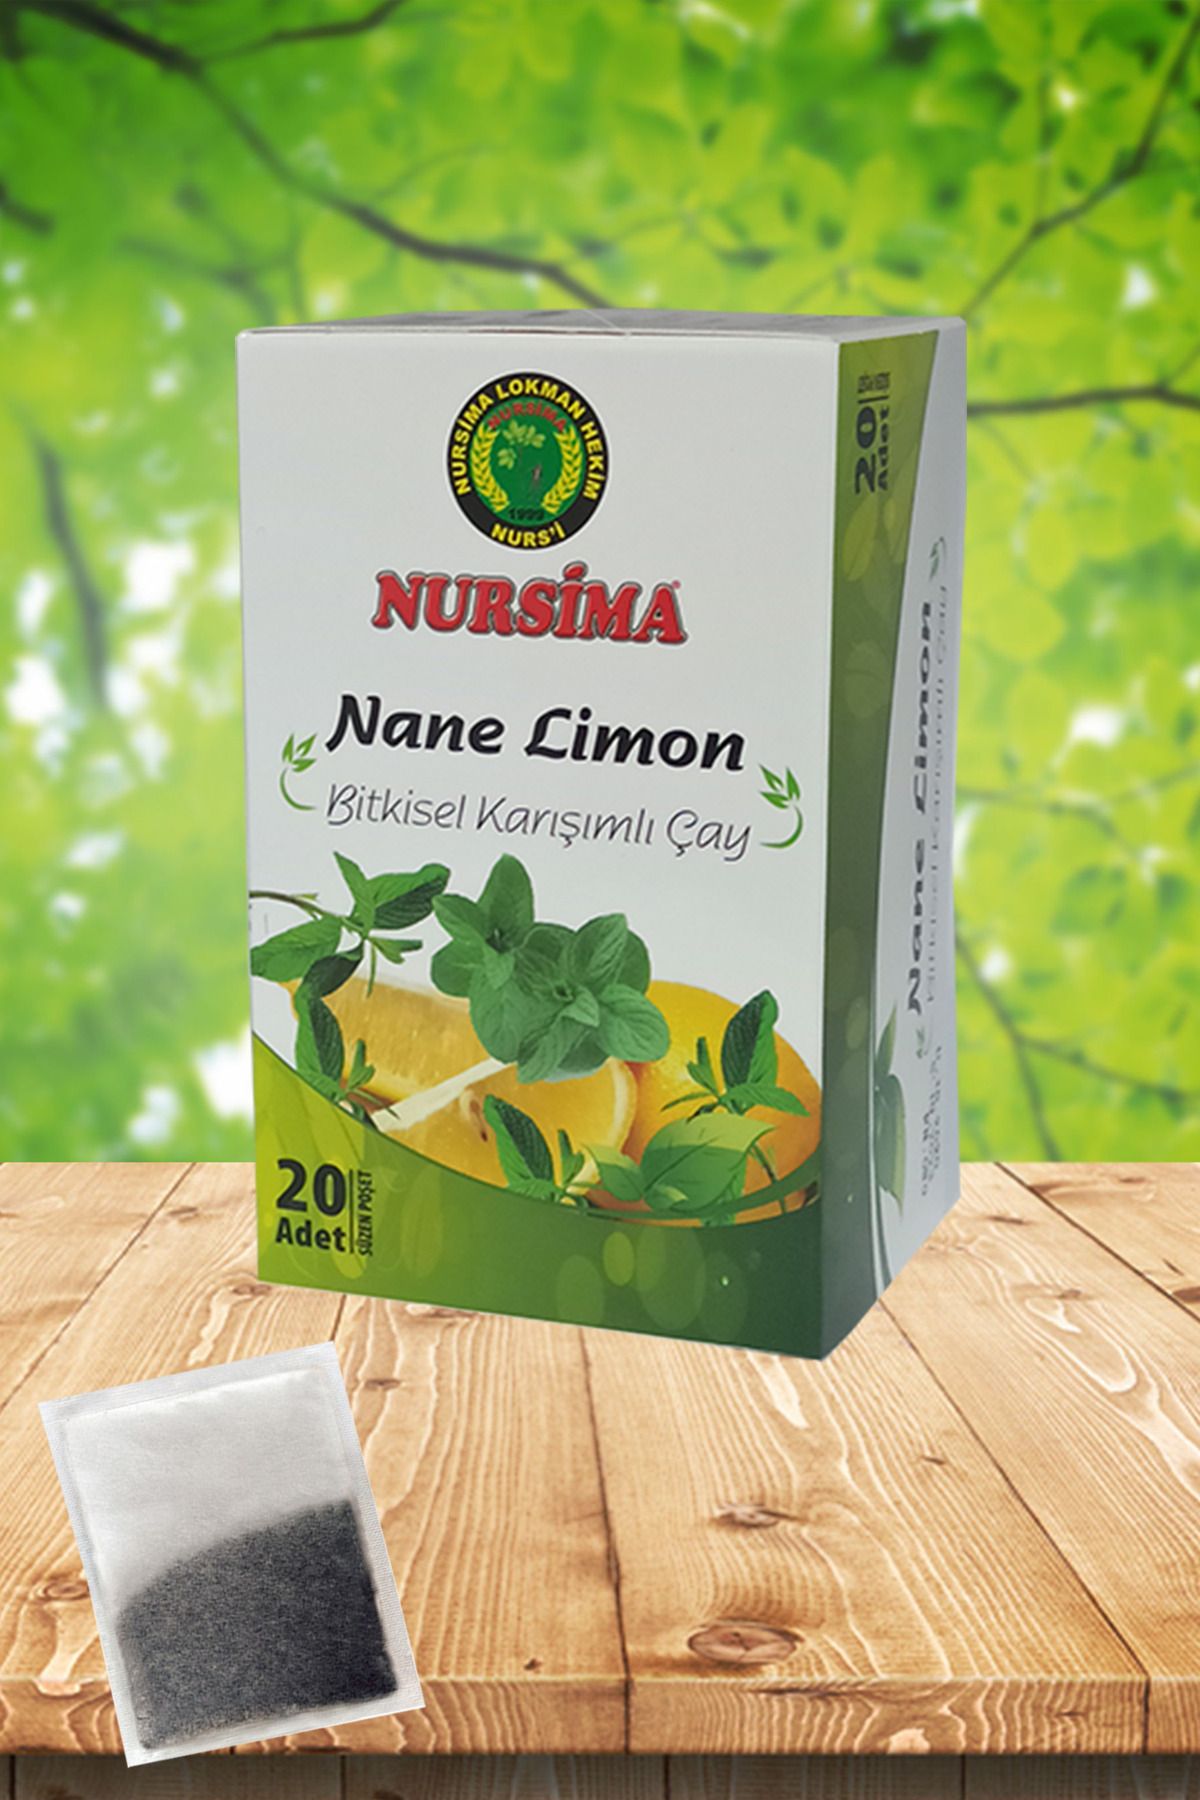 Nursima Nane Limon Bitkisel Karışımlı Çay 20 'li Süzen Poşet